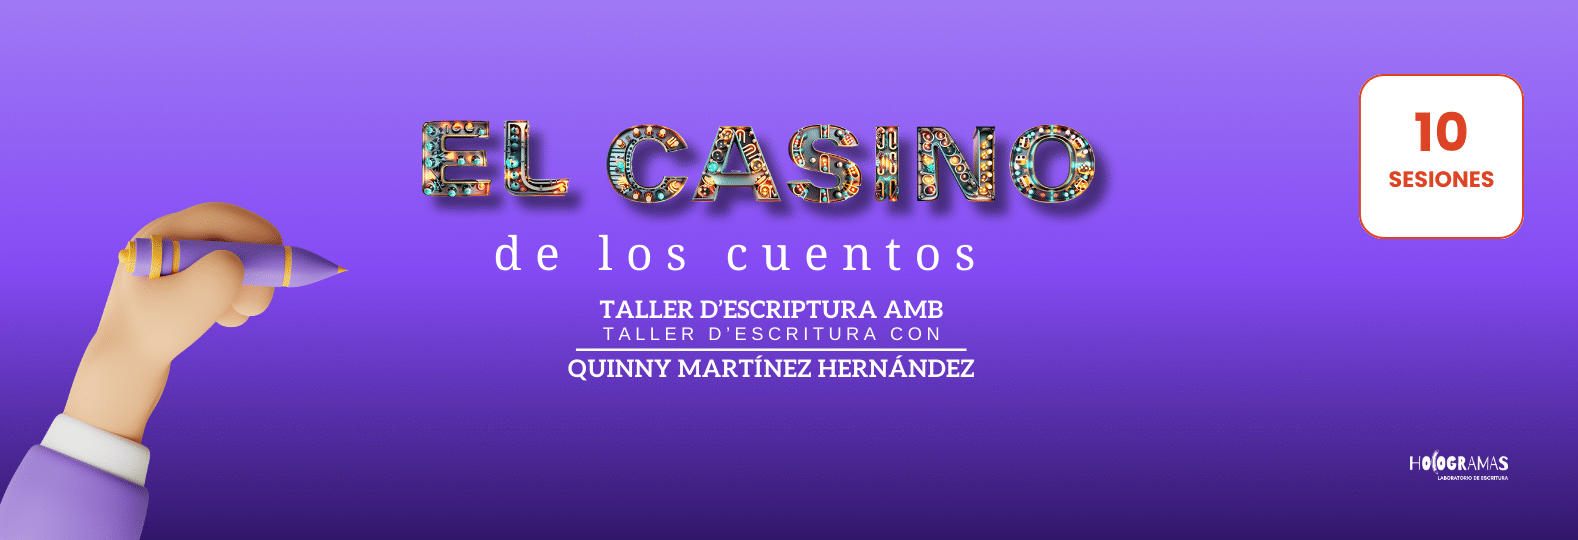 Banner El casino de los cuentos